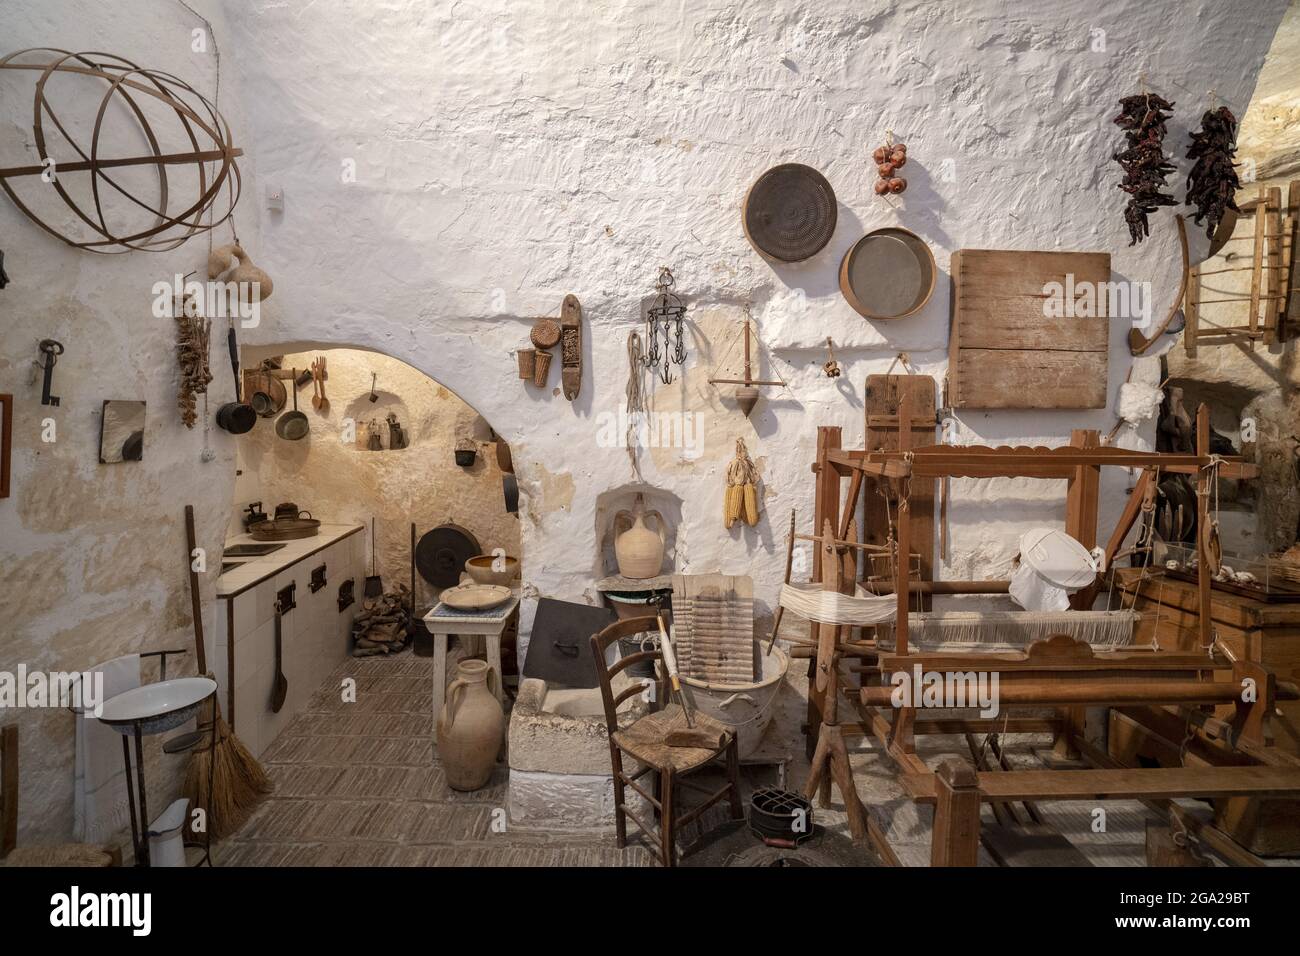 Museum über das traditionelle Leben in den Sassi von Mdera, Italien; Mdera, Basilikata, Italien Stockfoto